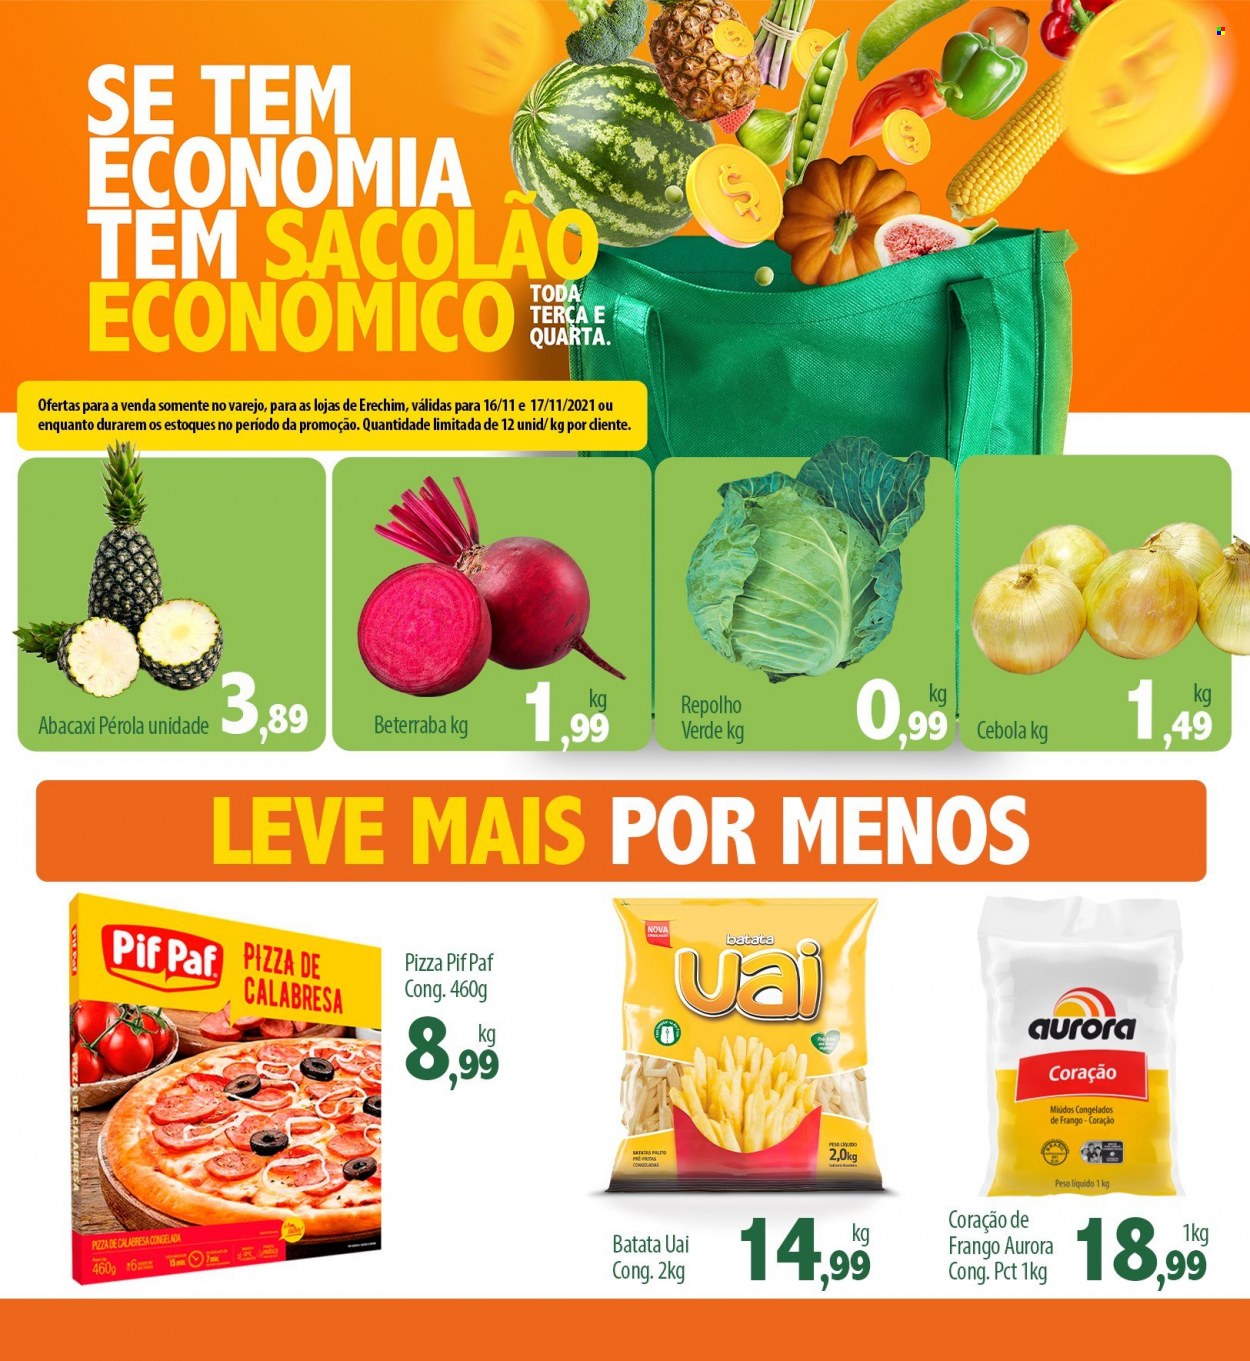 thumbnail - Folheto Econômico Atacadão - 16/11/2021 - 17/11/2021 - Produtos em promoção - abacaxi, cebola, repolho, Aurora, pizza, Pif Paf, vinho. Página 1.